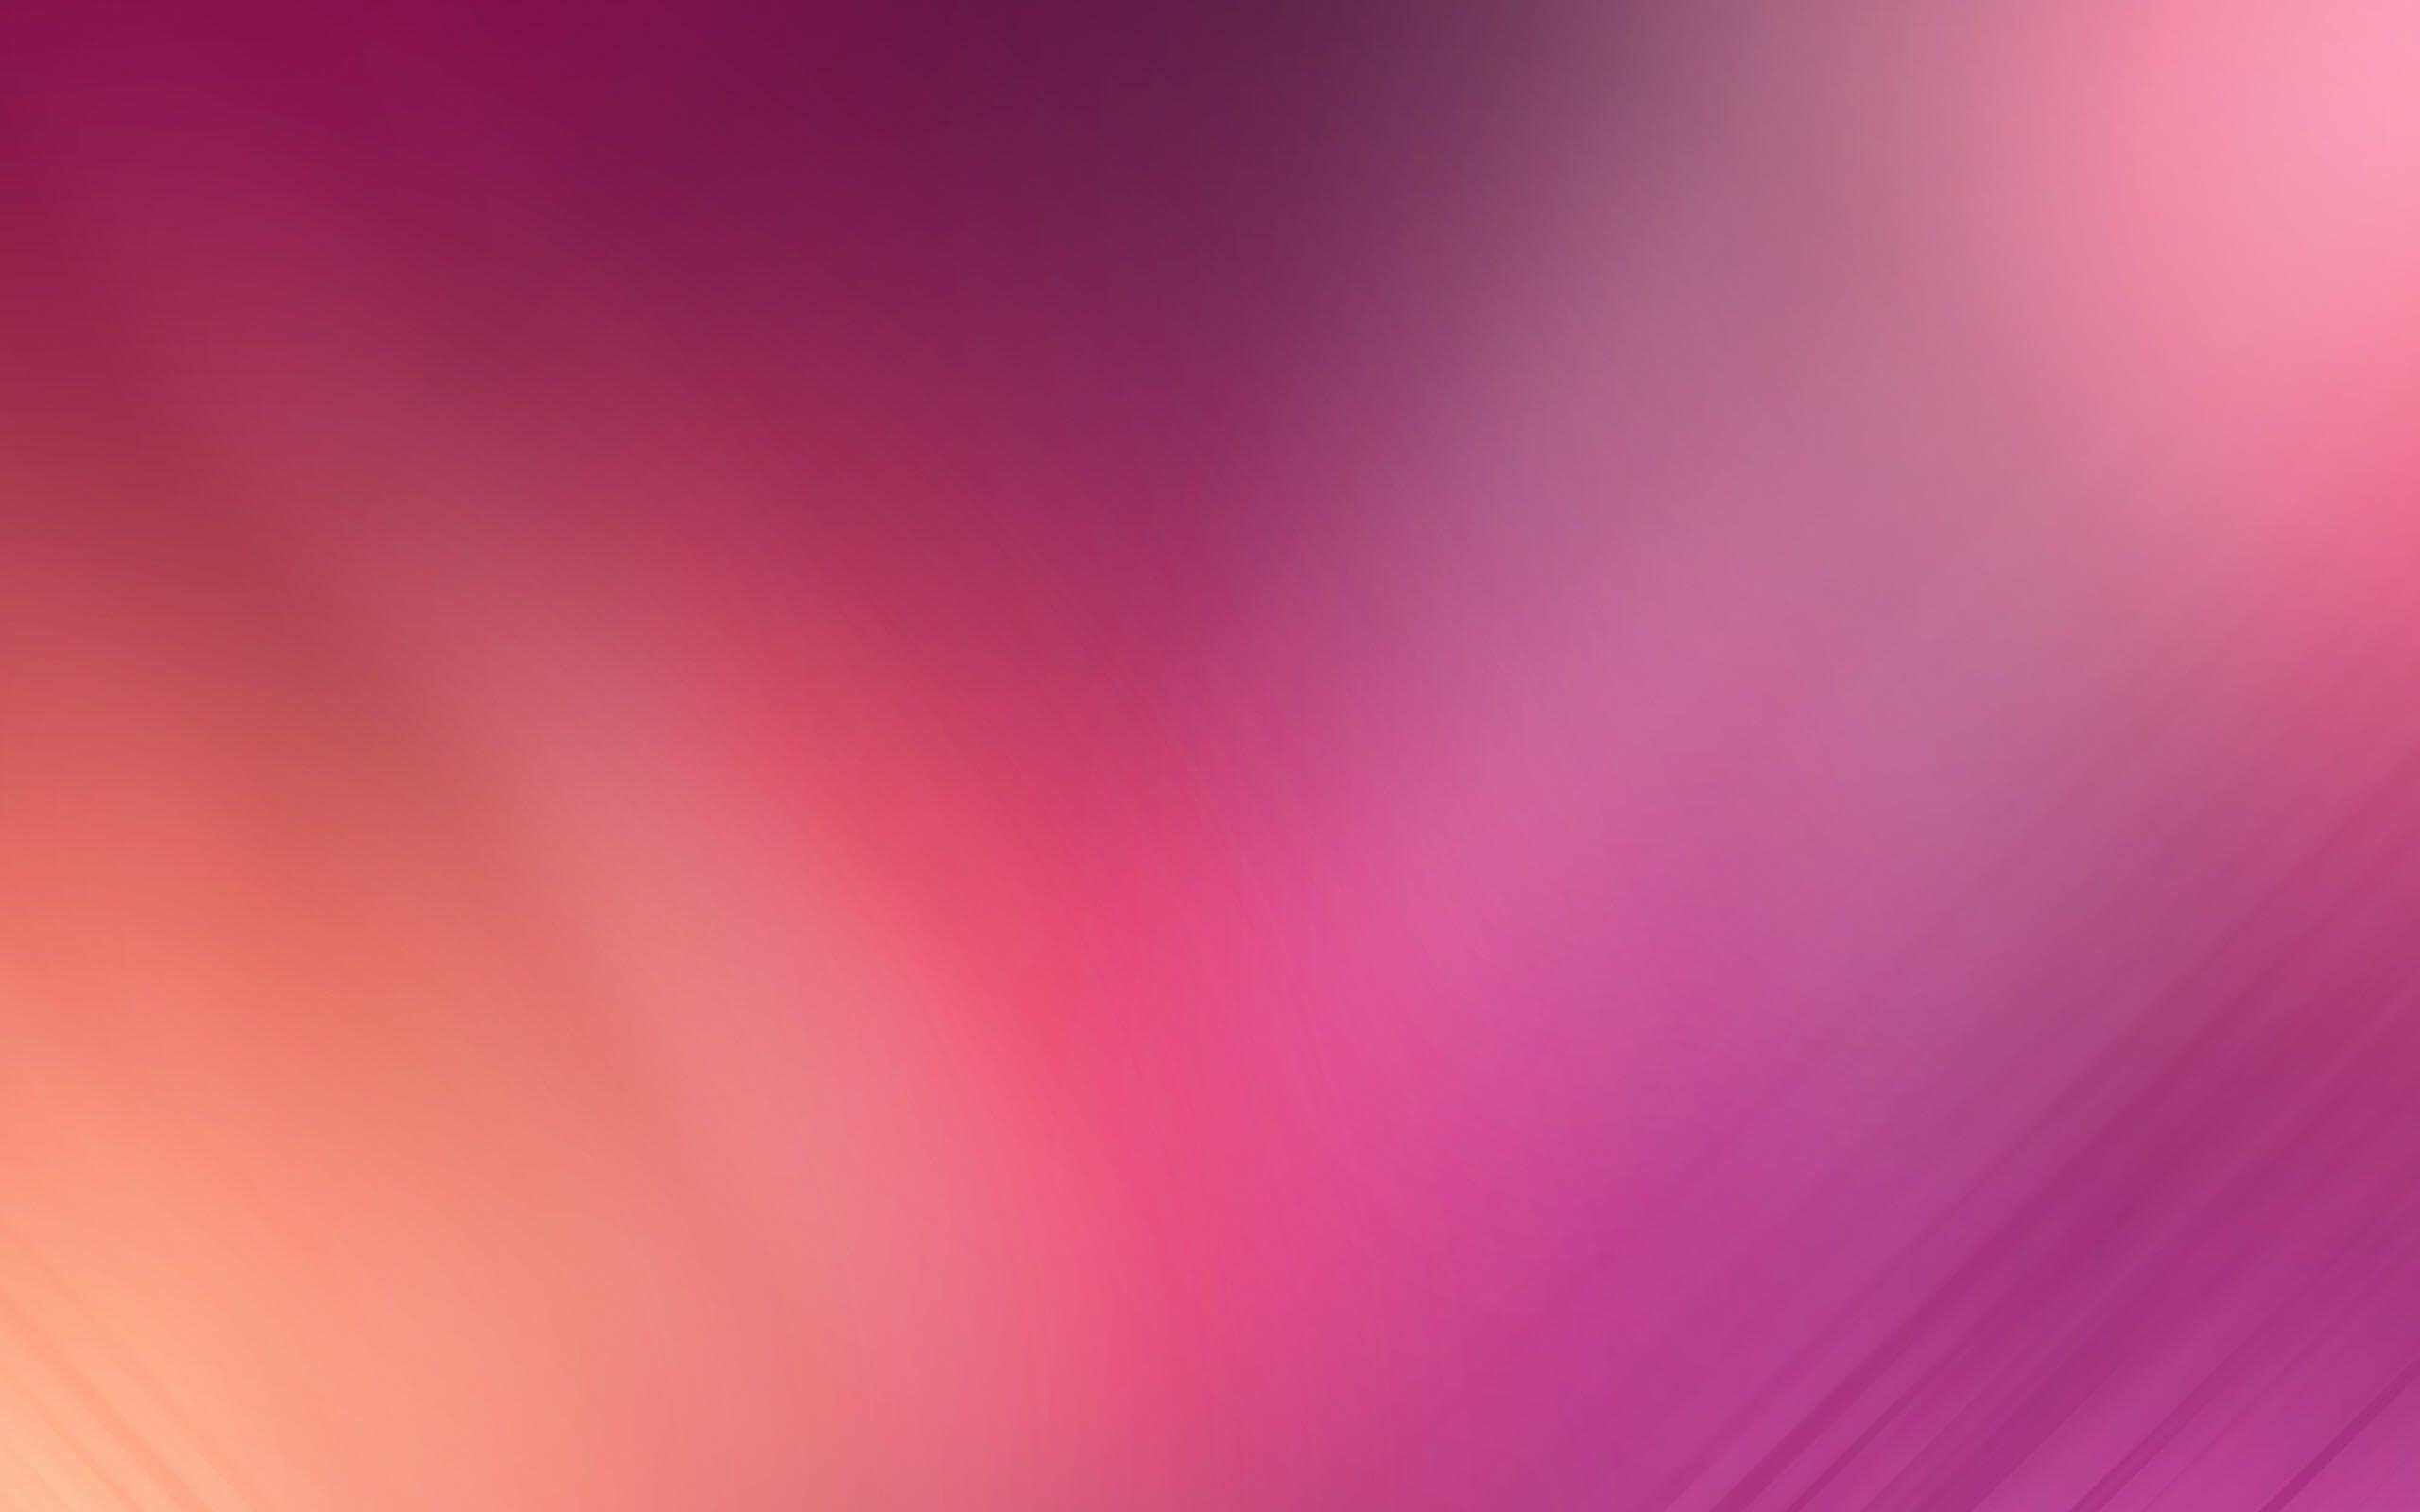 plain pink wallpaper. HD Desktop, UHD, 4K, Mobile